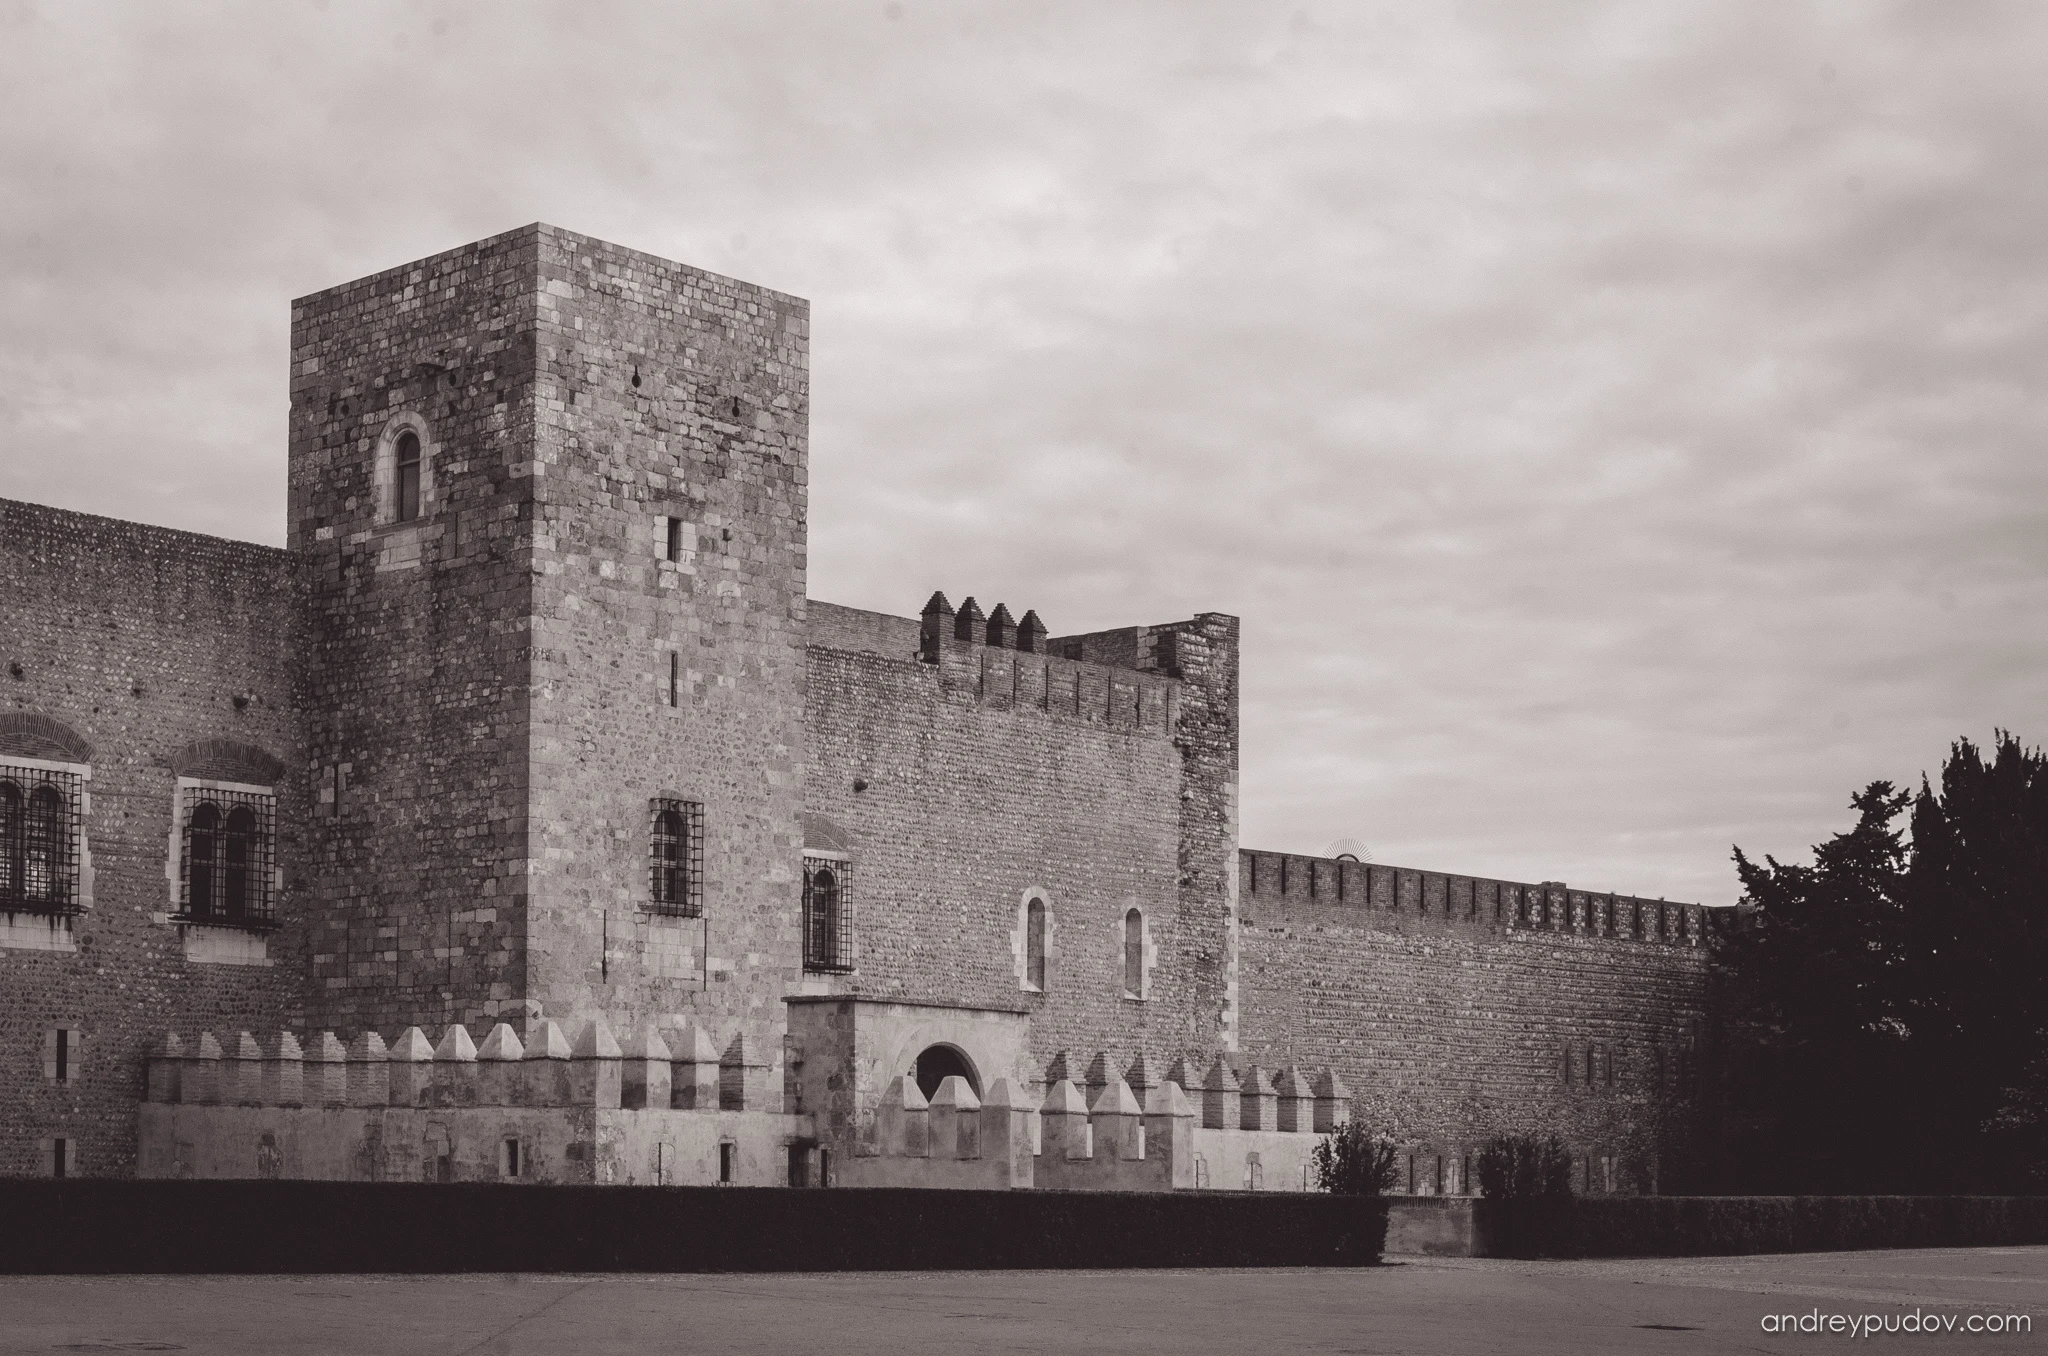 Perpignan - Palace of the Kings of Majorca